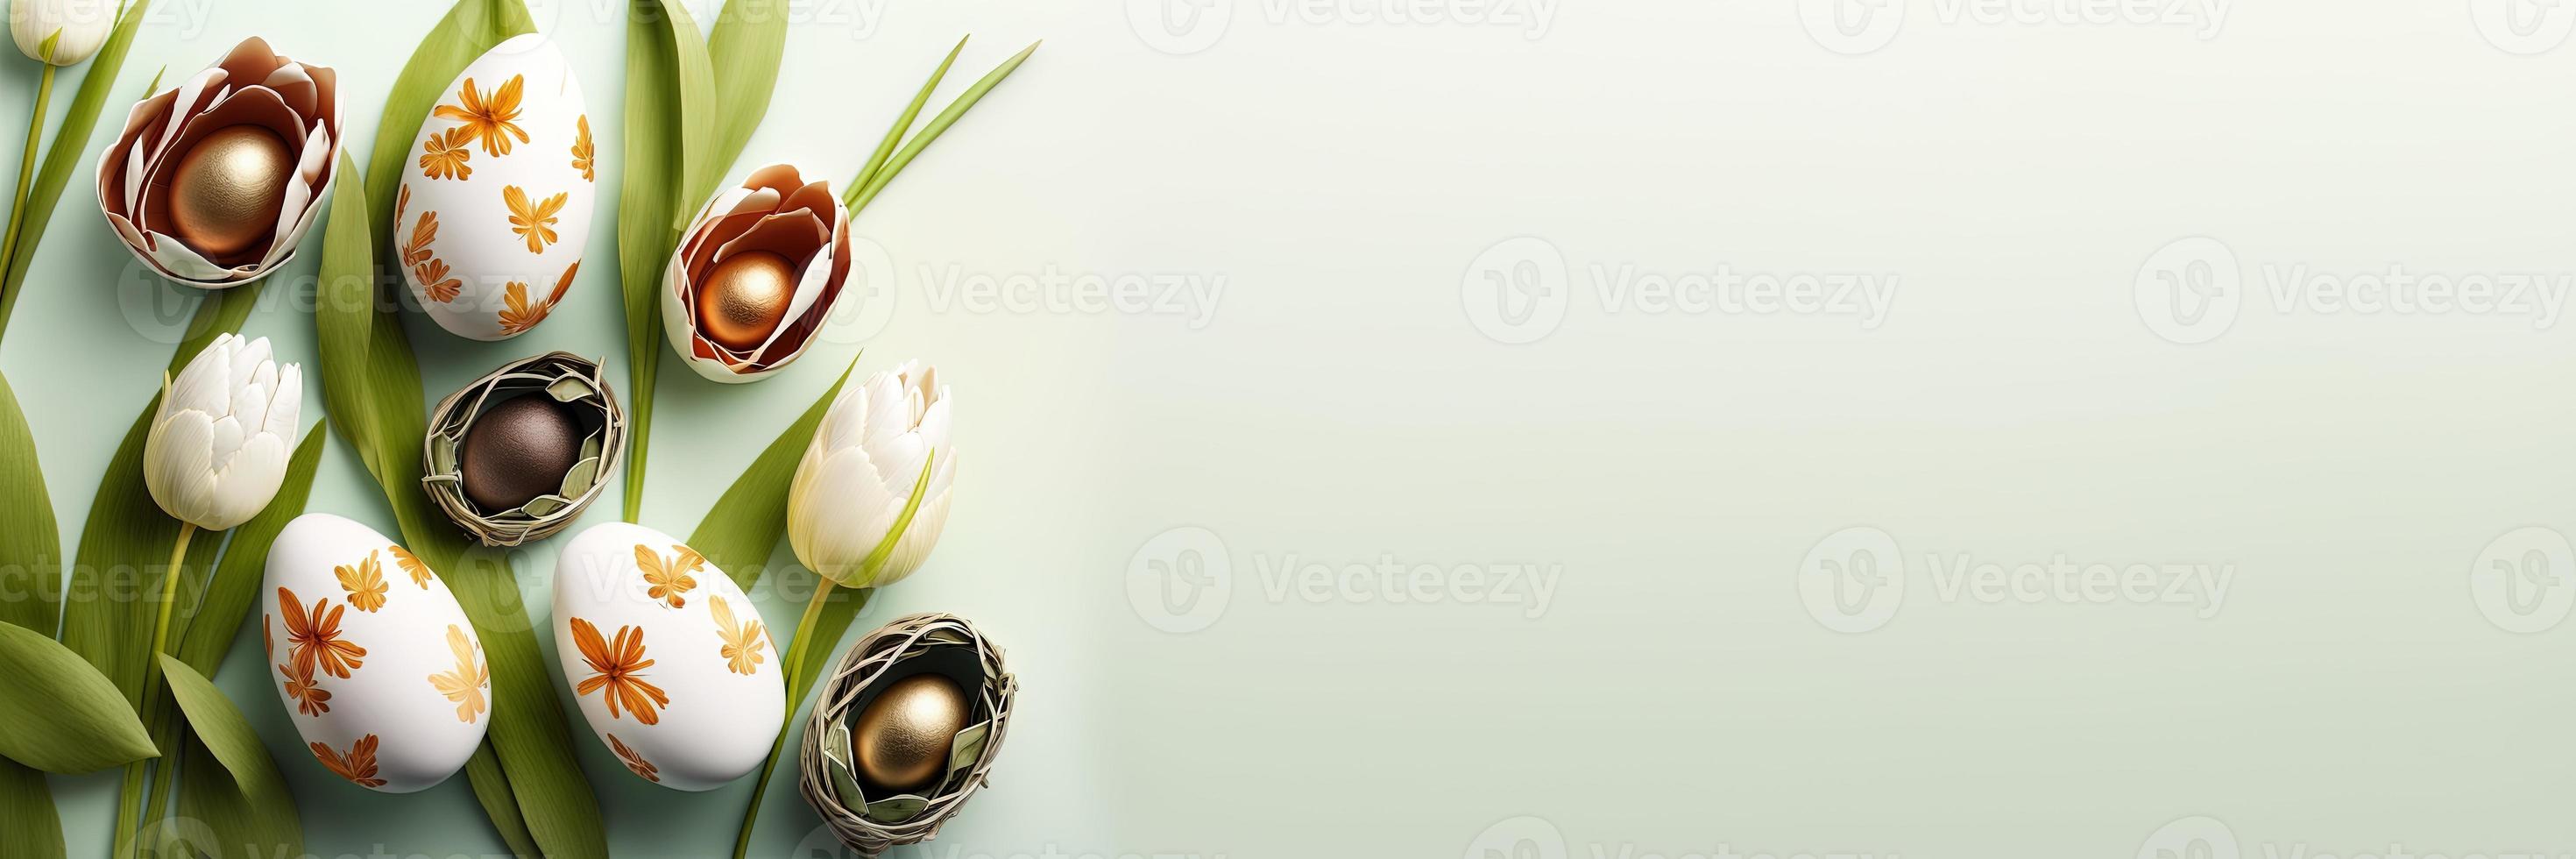 tulipas decoradas e ovos com espaço de cópia para banner de páscoa foto